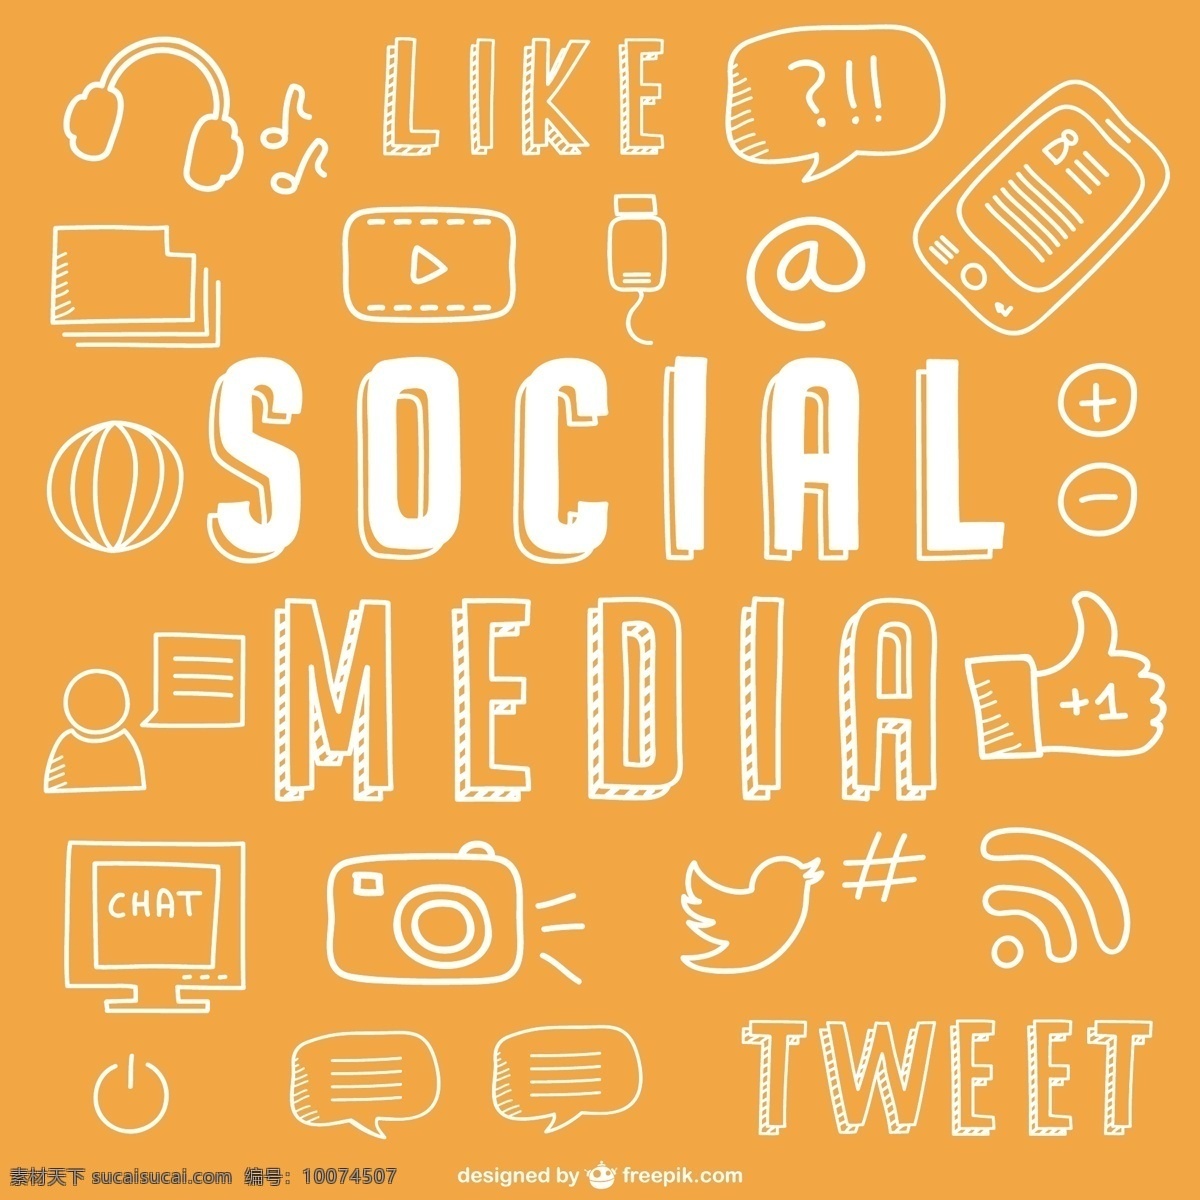 社交 媒体 绘图 图标 一方面 社交媒体 脸谱网 框 手绘 网络 社会媒体图标 图形 推特 涂鸦 橙色的人 画画 聊天 社会图标 橙色